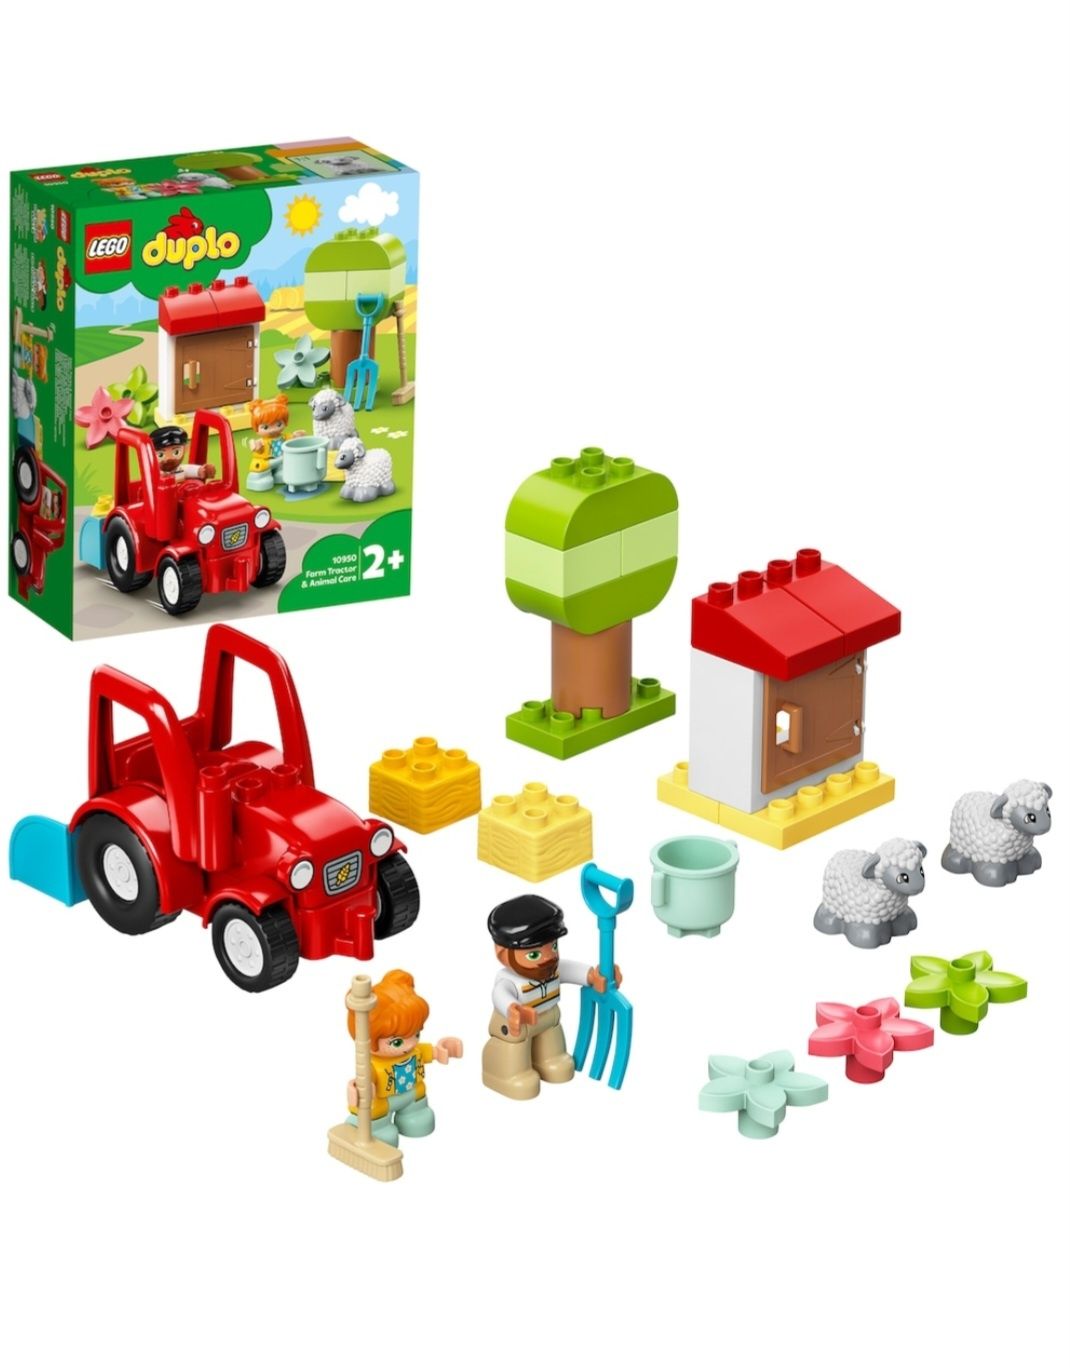 Sigilat LEGO DUPLO 10950 " Tractor agricol"